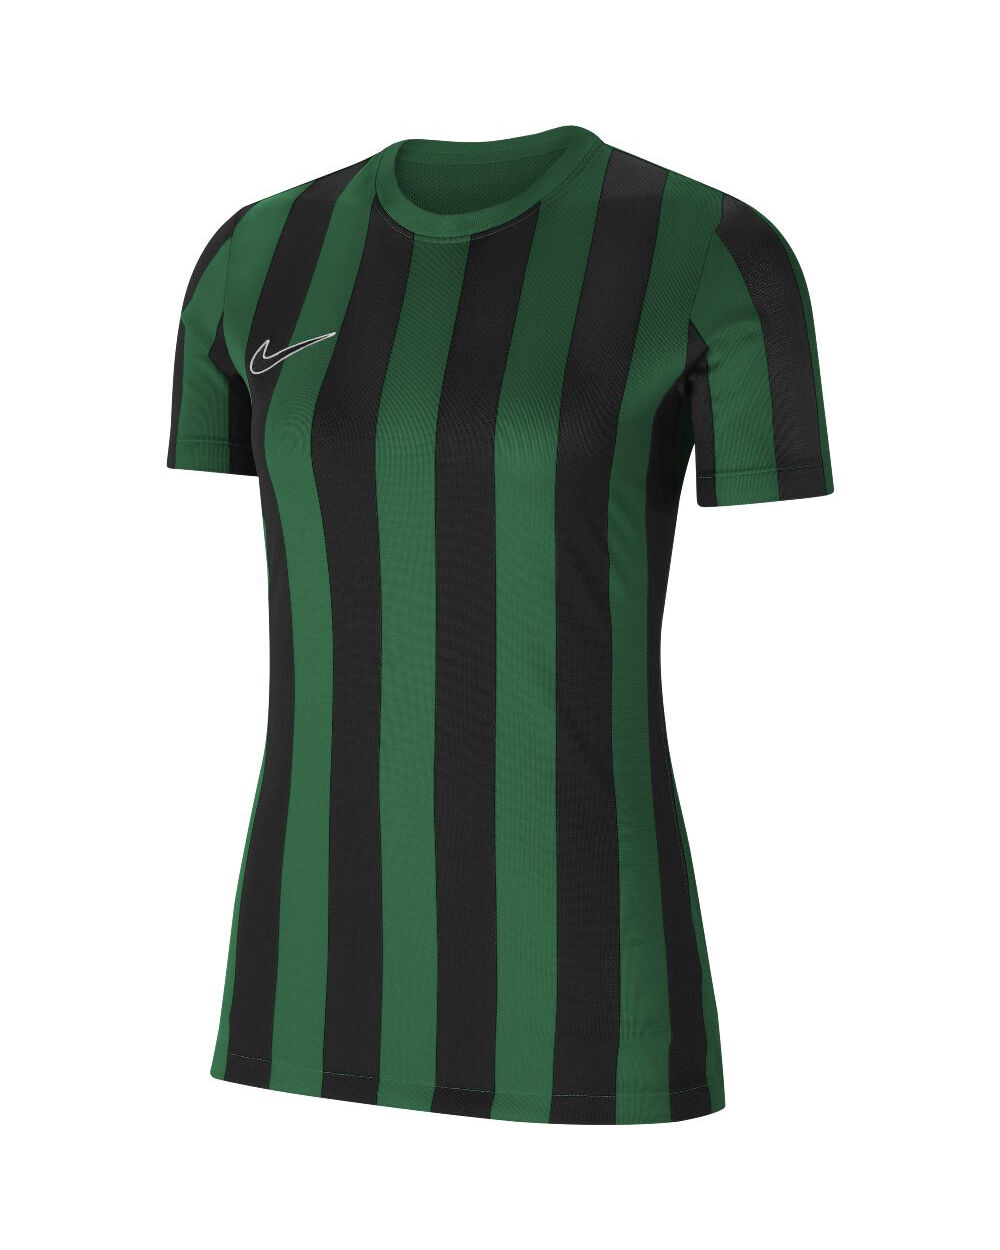 Nike Maglia Striped Division IV Verde e Nero per Donne CW3816-302 S